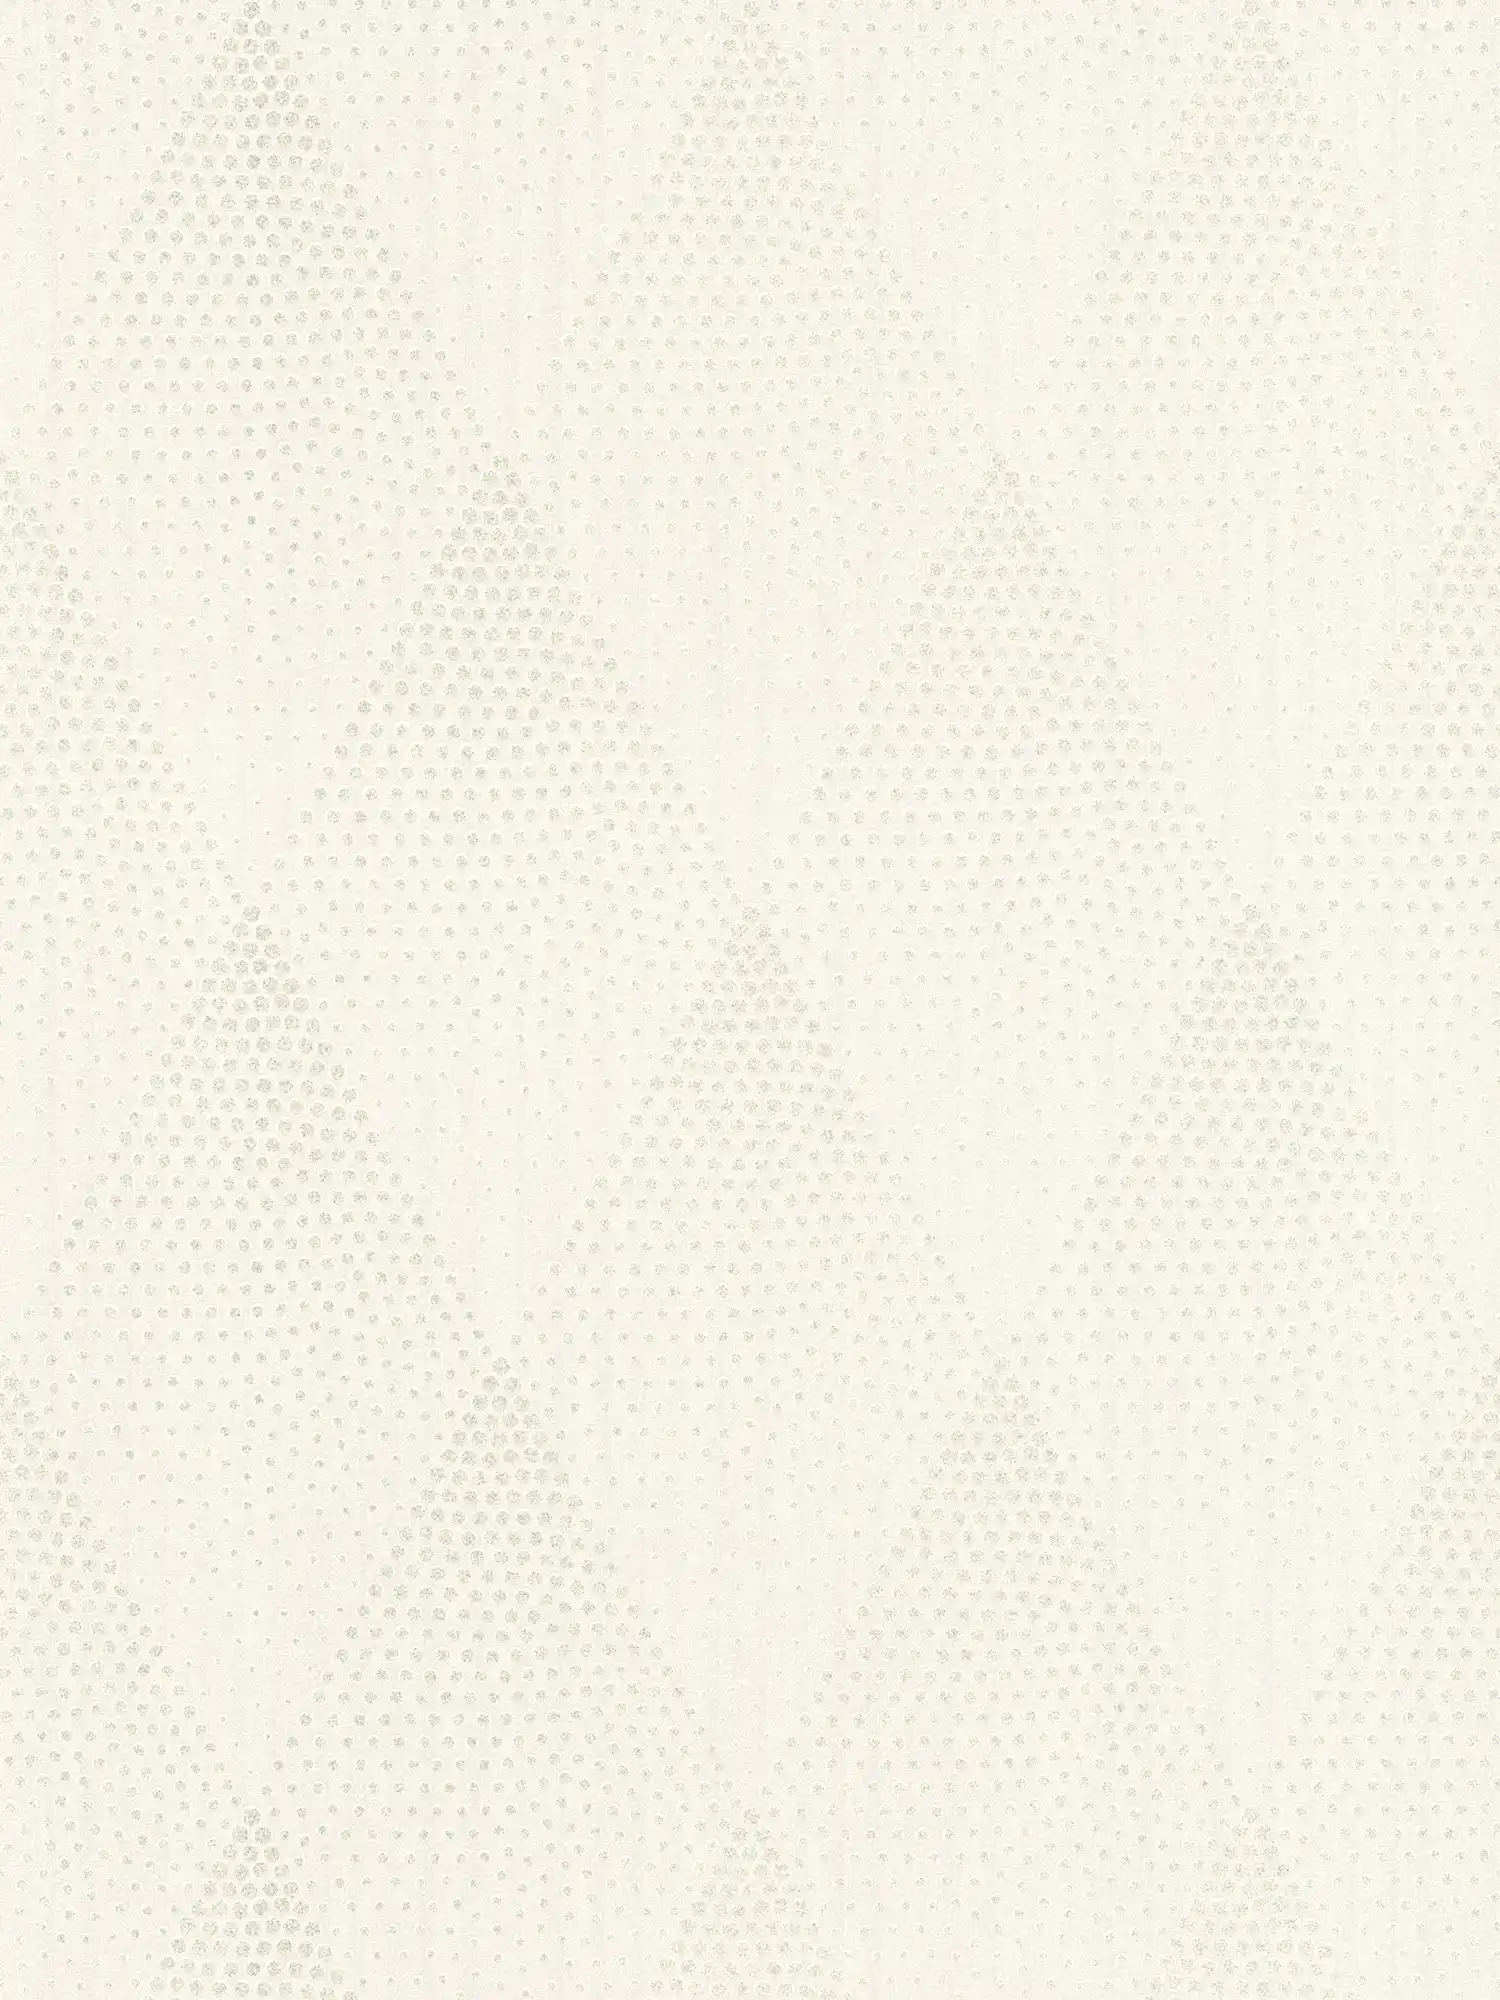 Papel pintado de puntos efecto brillo en estilo retro - blanco, plata, gris
